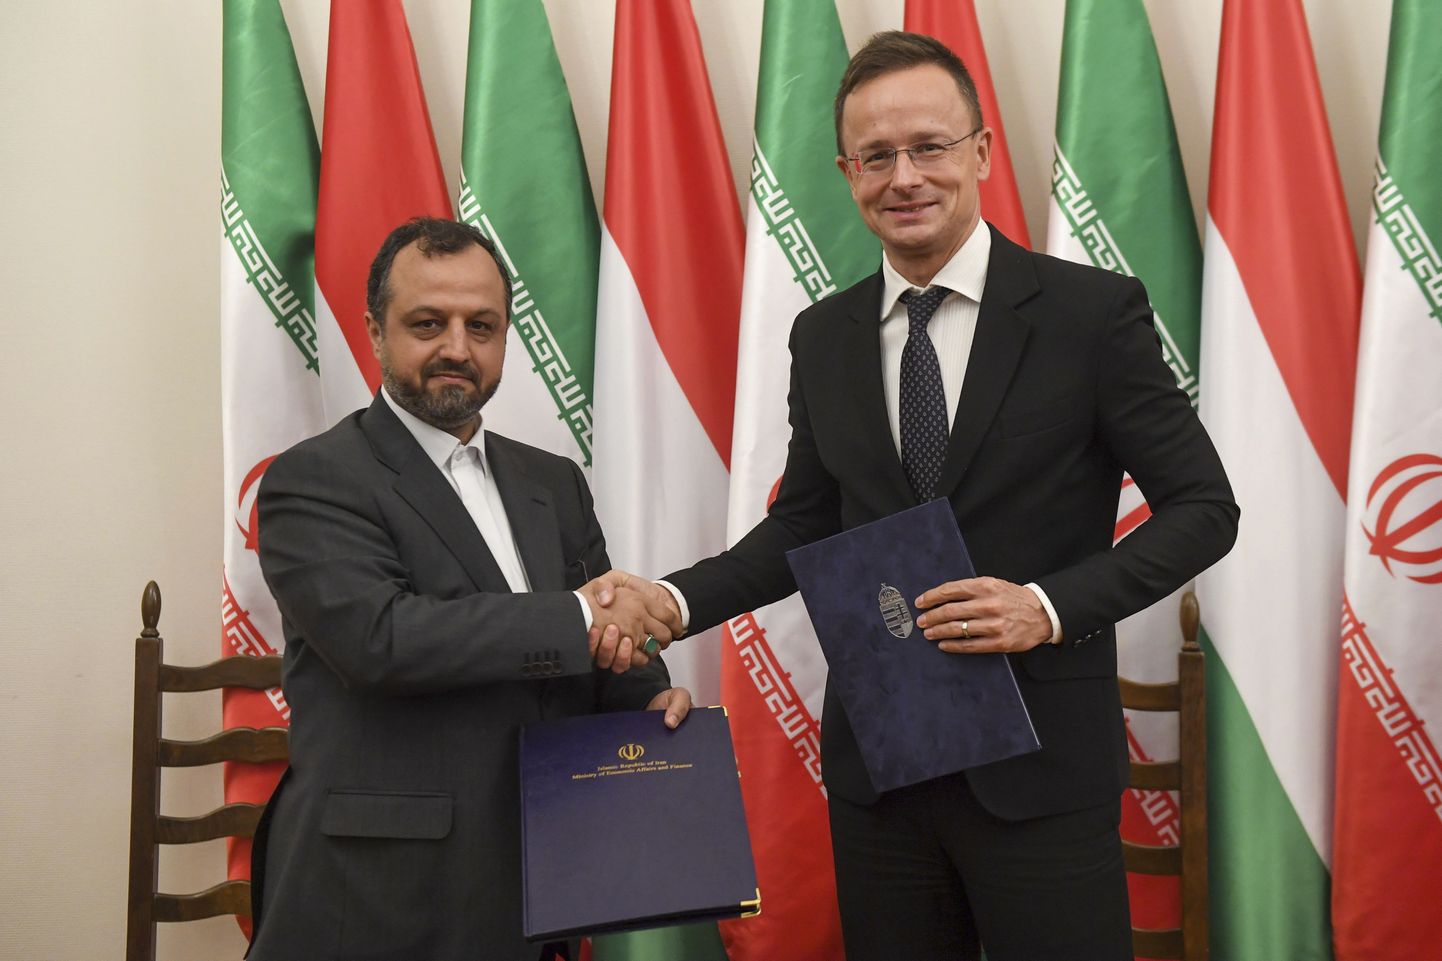 Iraani majandus- ja rahandusminister Ehsan Khandozi ja Ungari välis- ja kaubandusminister Peter Szijjarto surumas kätt pärast kolmanda Ungari-Iraani majanduskomitee koosoleku protokolli allkirjastamist Budapestis, Ungaris.